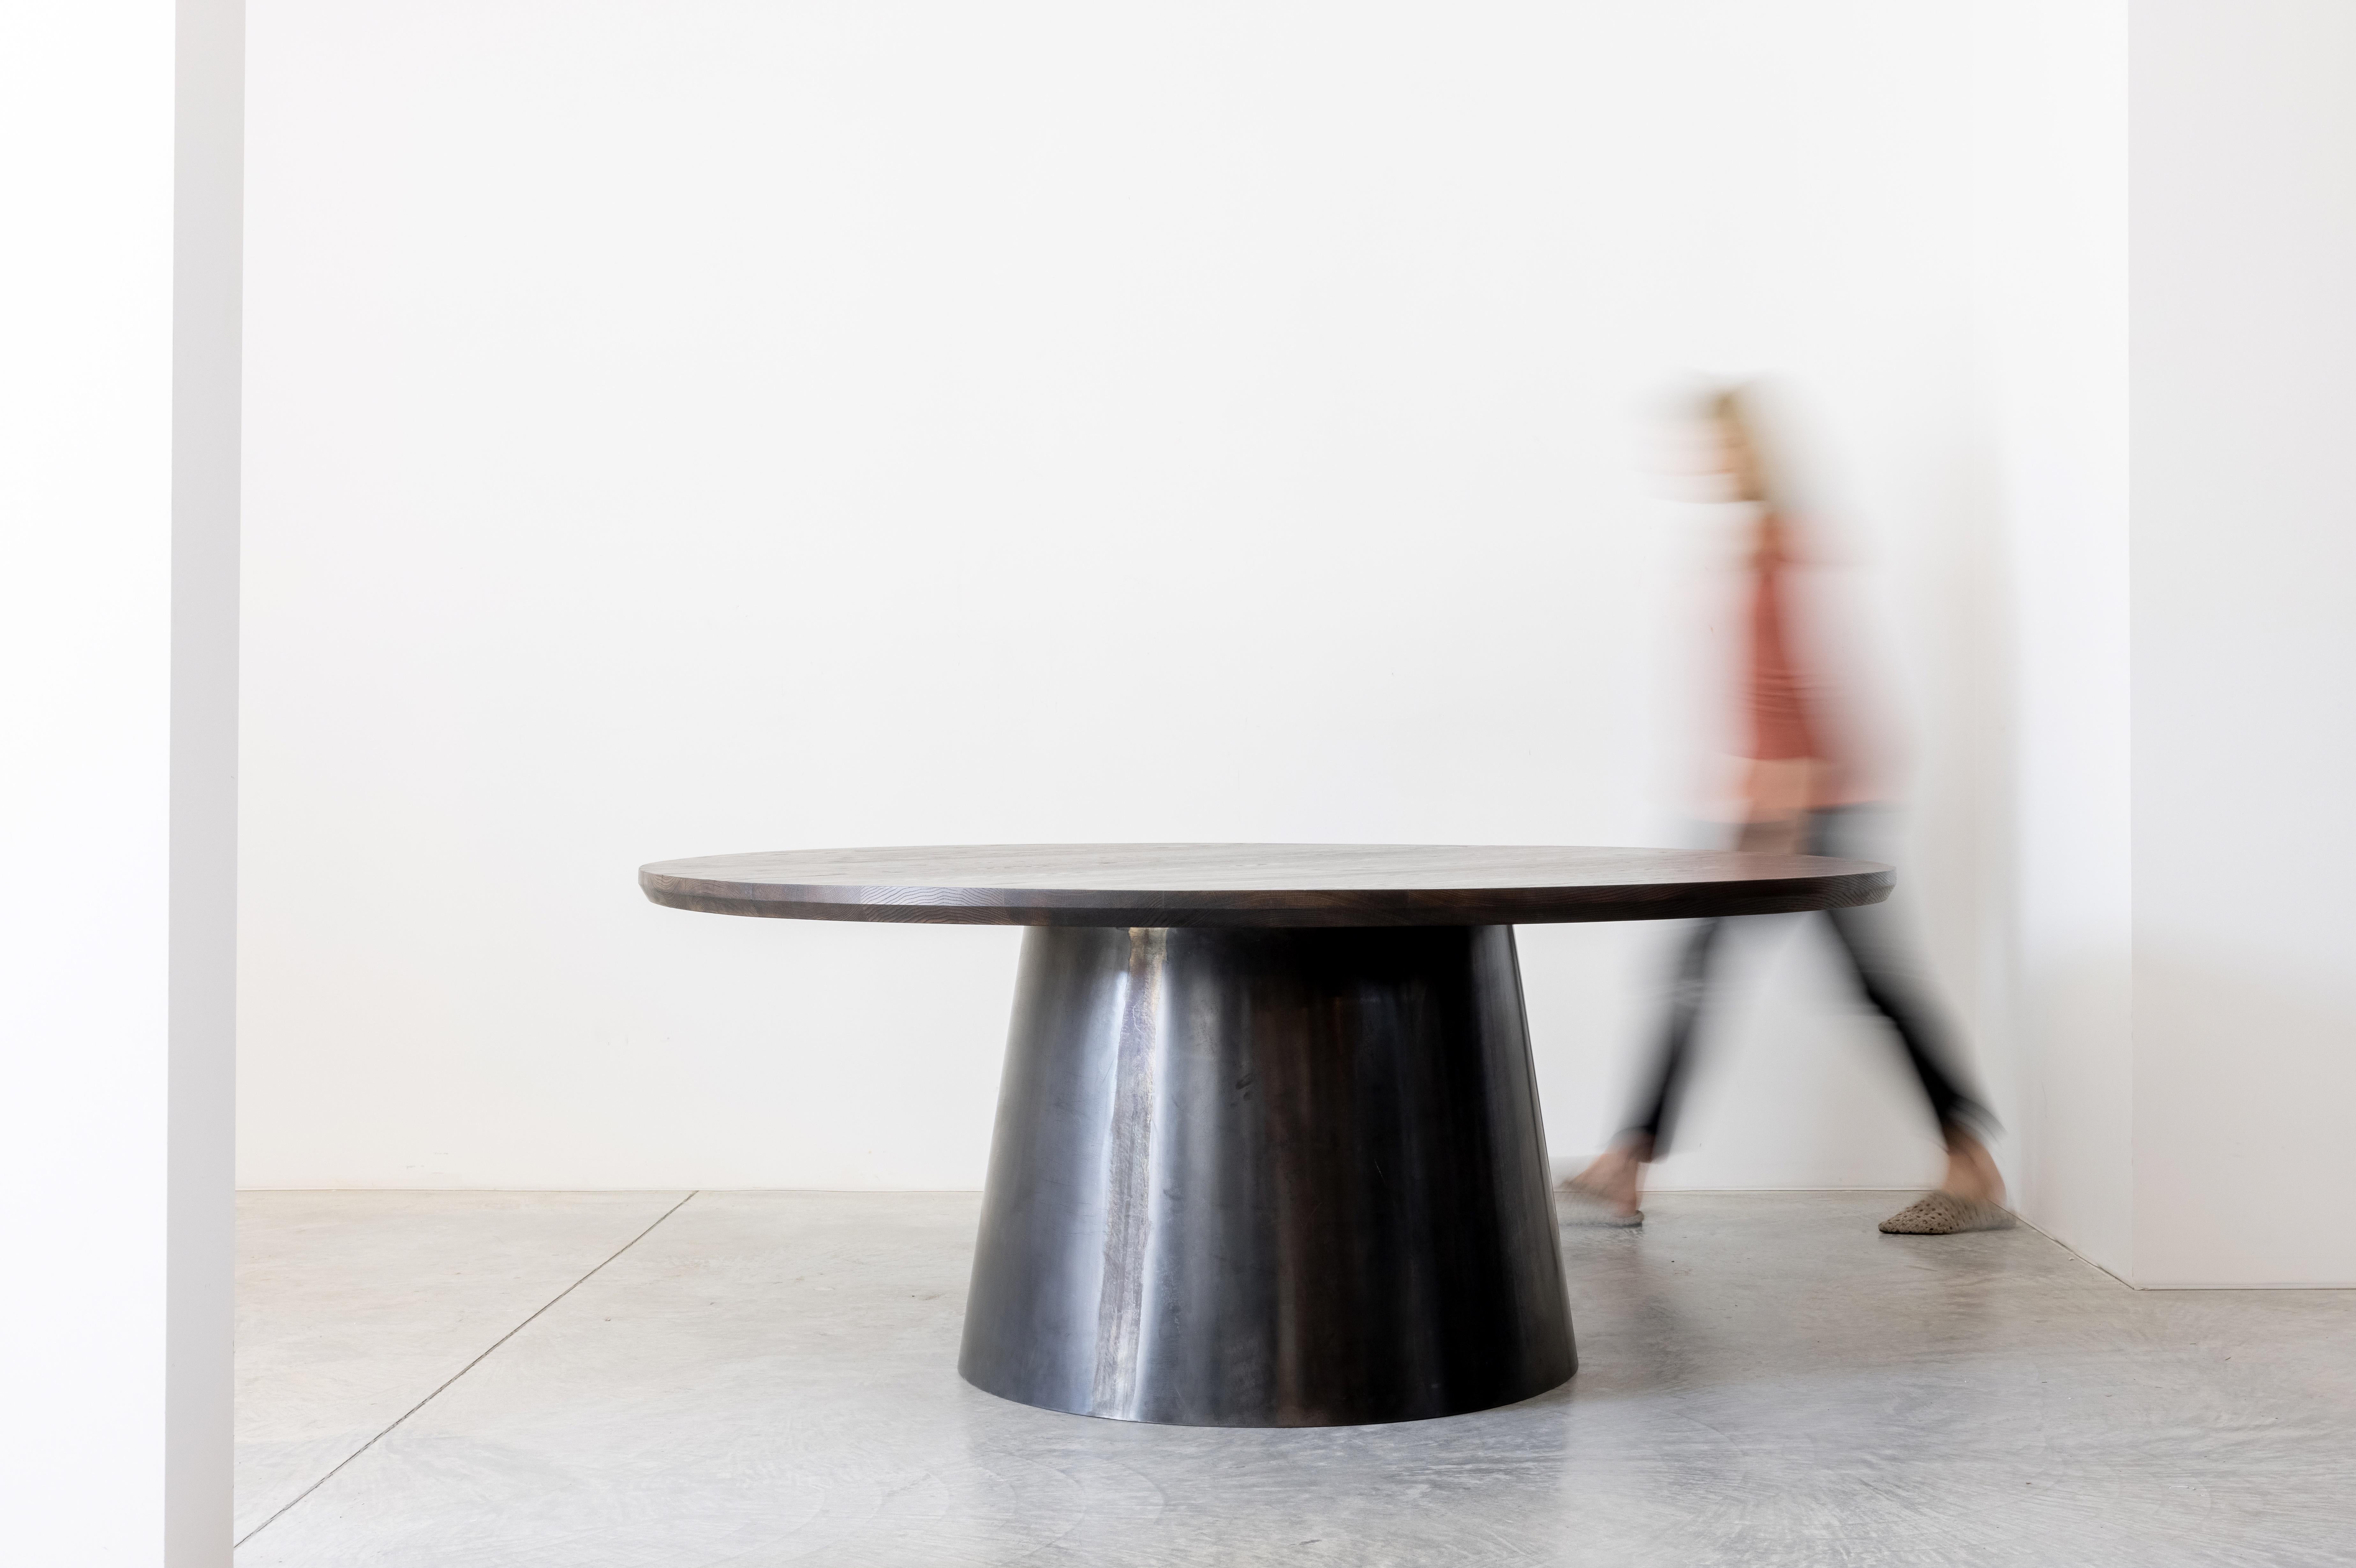 Une table ronde spectaculaire dotée d'une épaisse base en acier noirci. La base conique incurvée est méticuleusement courbée et jointe pour créer une connexion virtuelle sans couture, agissant comme une forme sculpturale. La conicité à 8 degrés